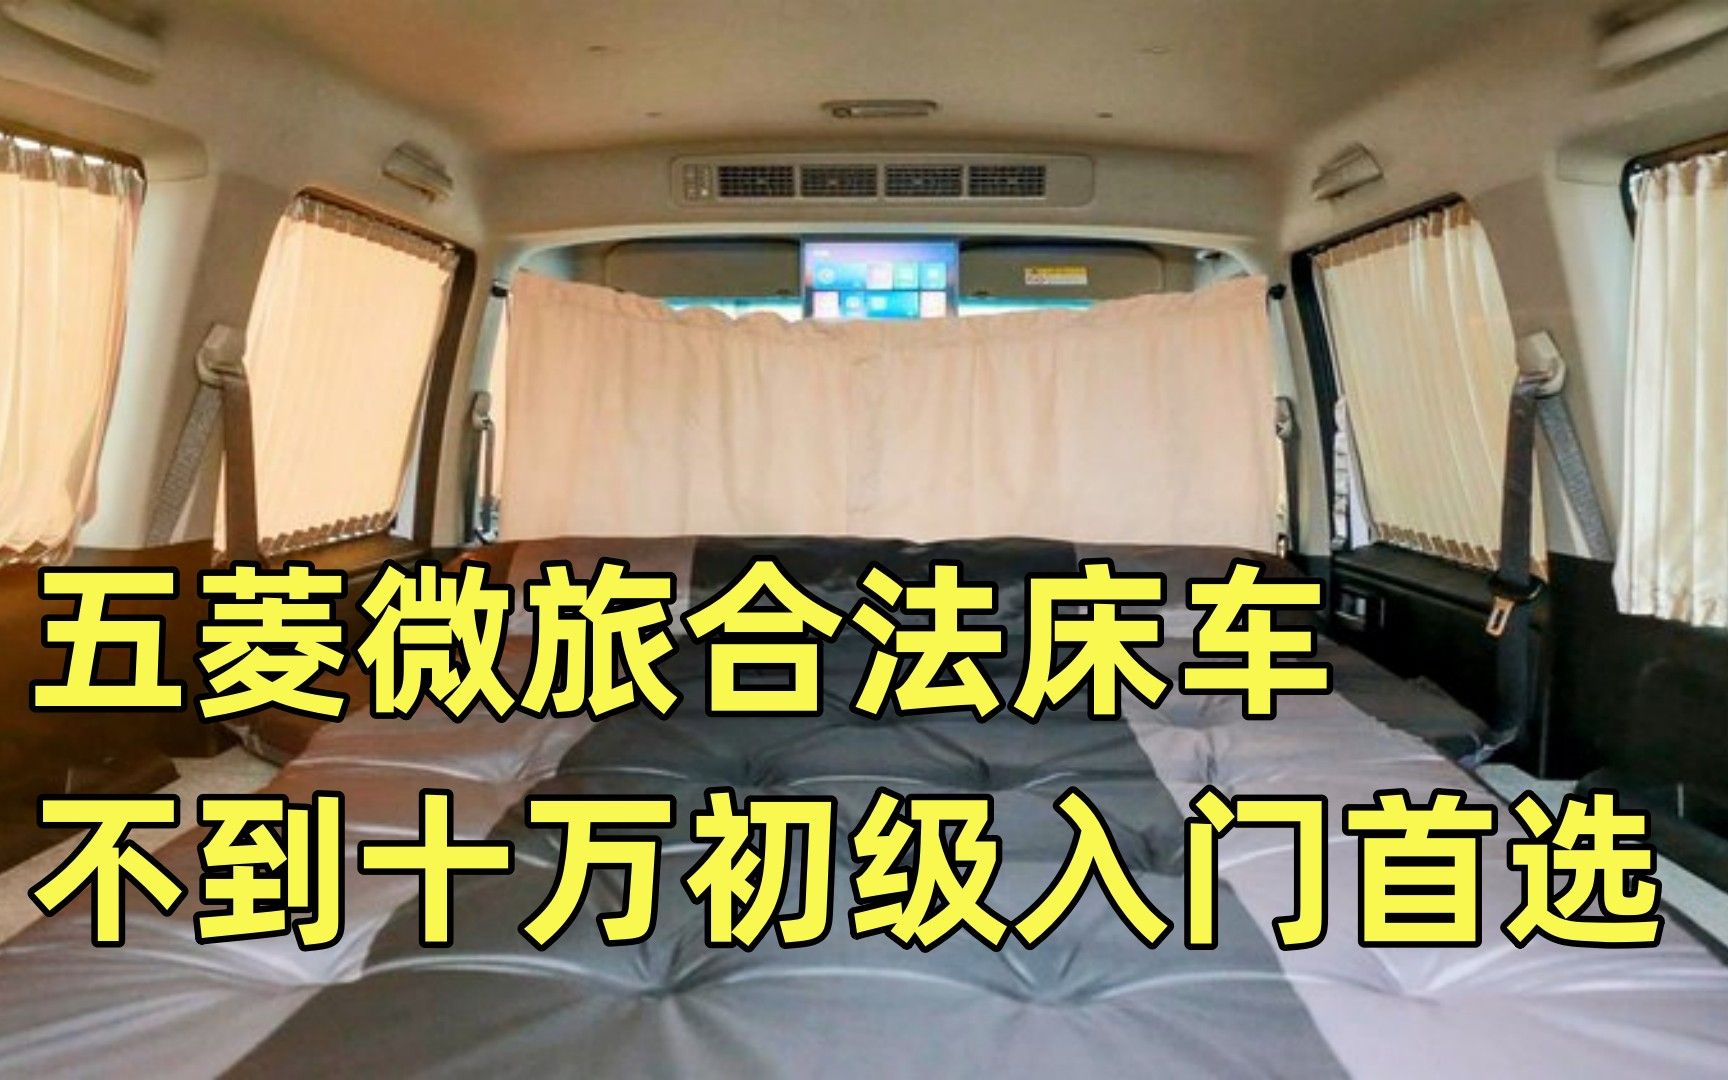 五菱微旅车内部图片图片